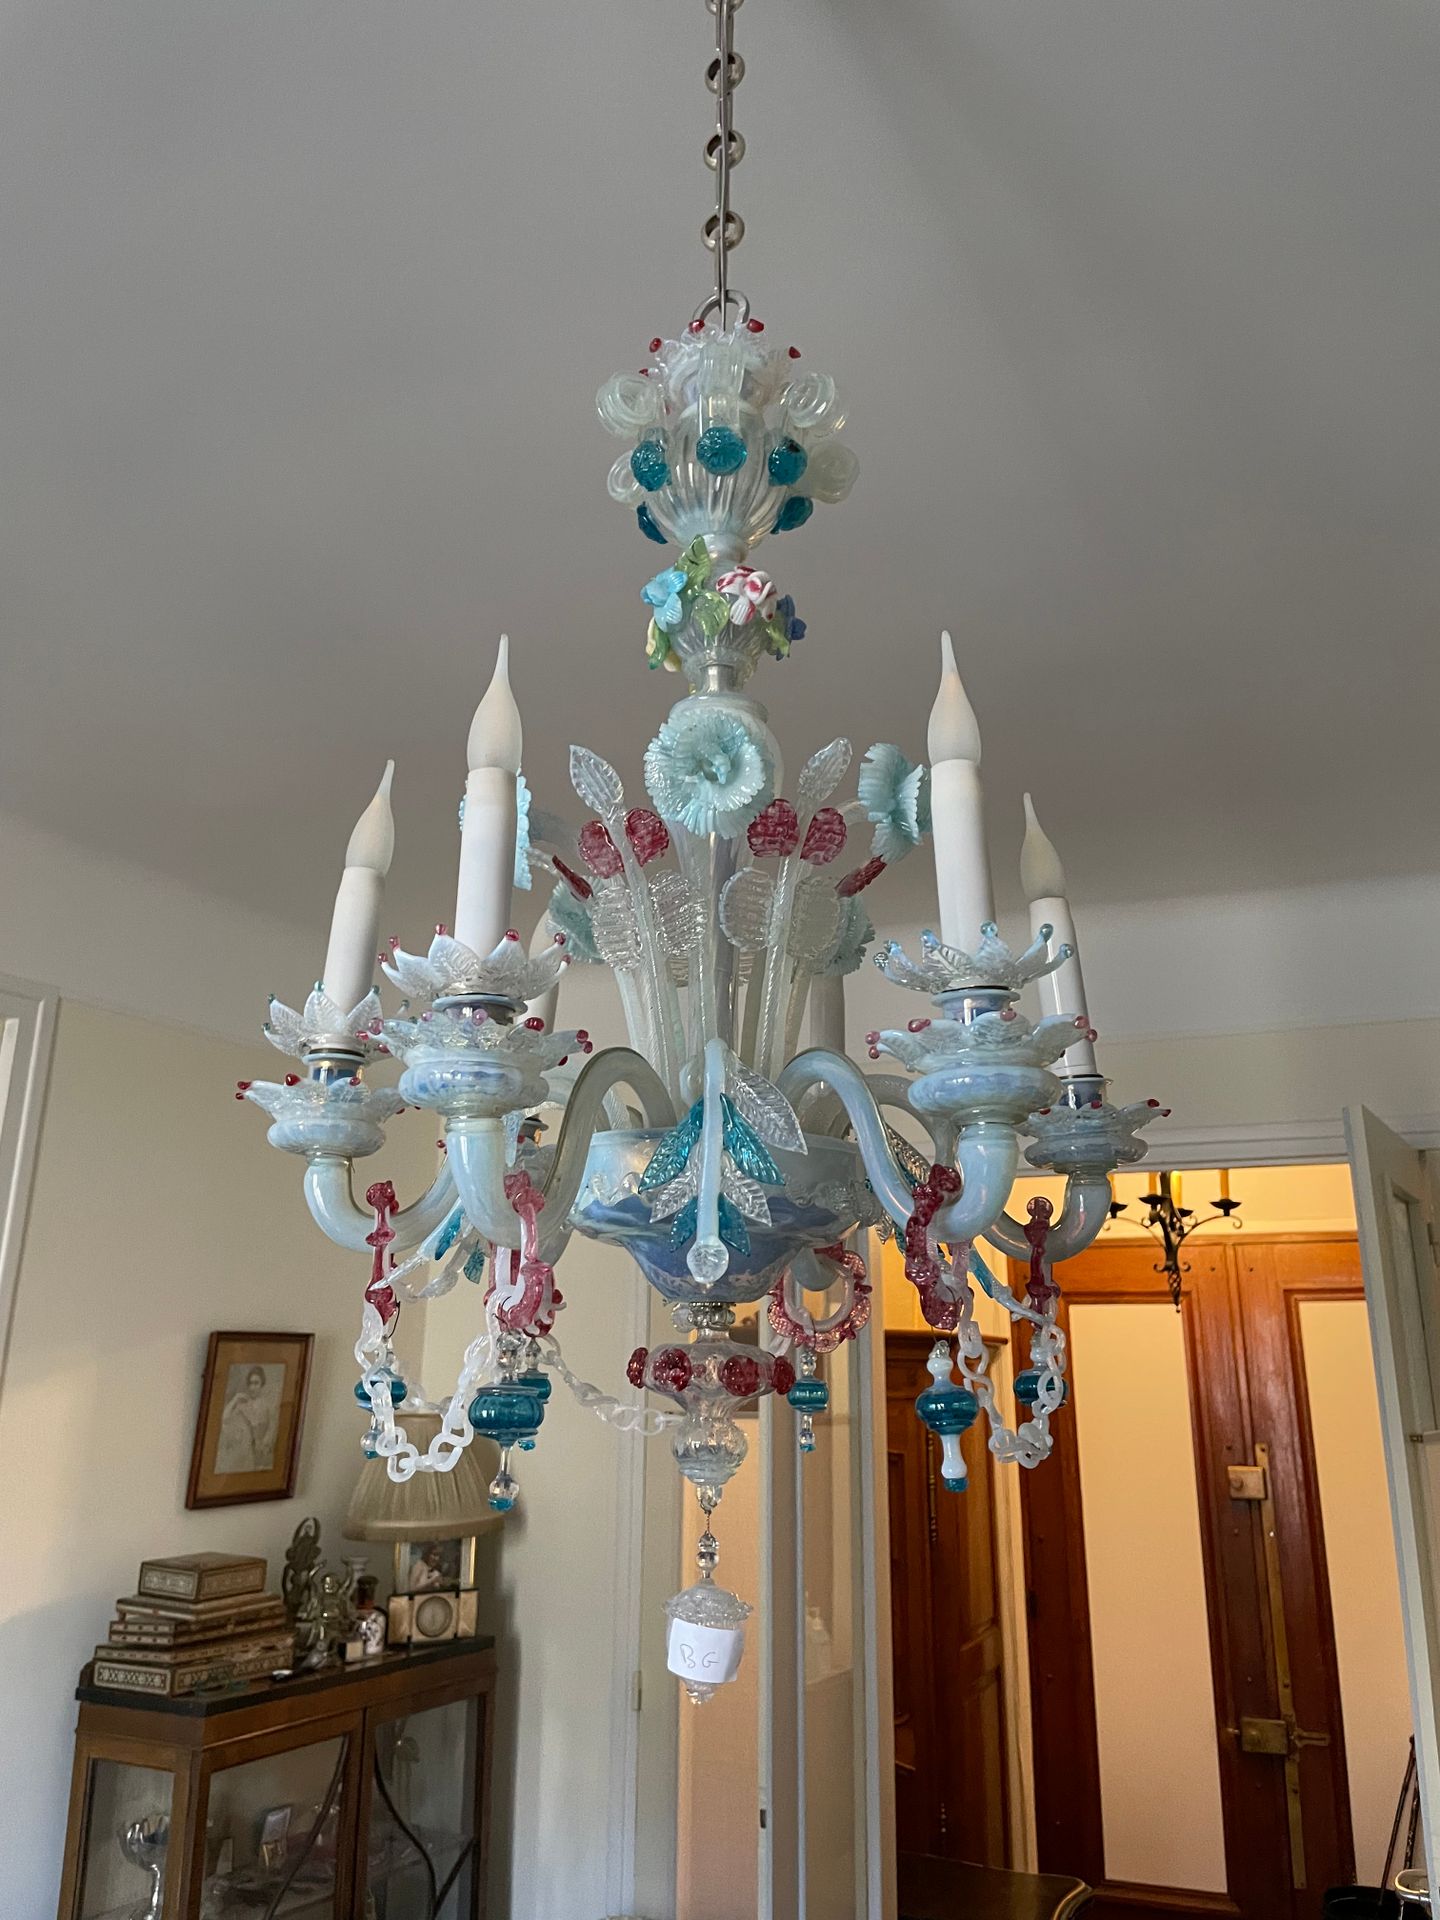 Null 吊灯
来自威尼斯的多色乳白玻璃
有六个灯臂
饰有花朵和枝叶